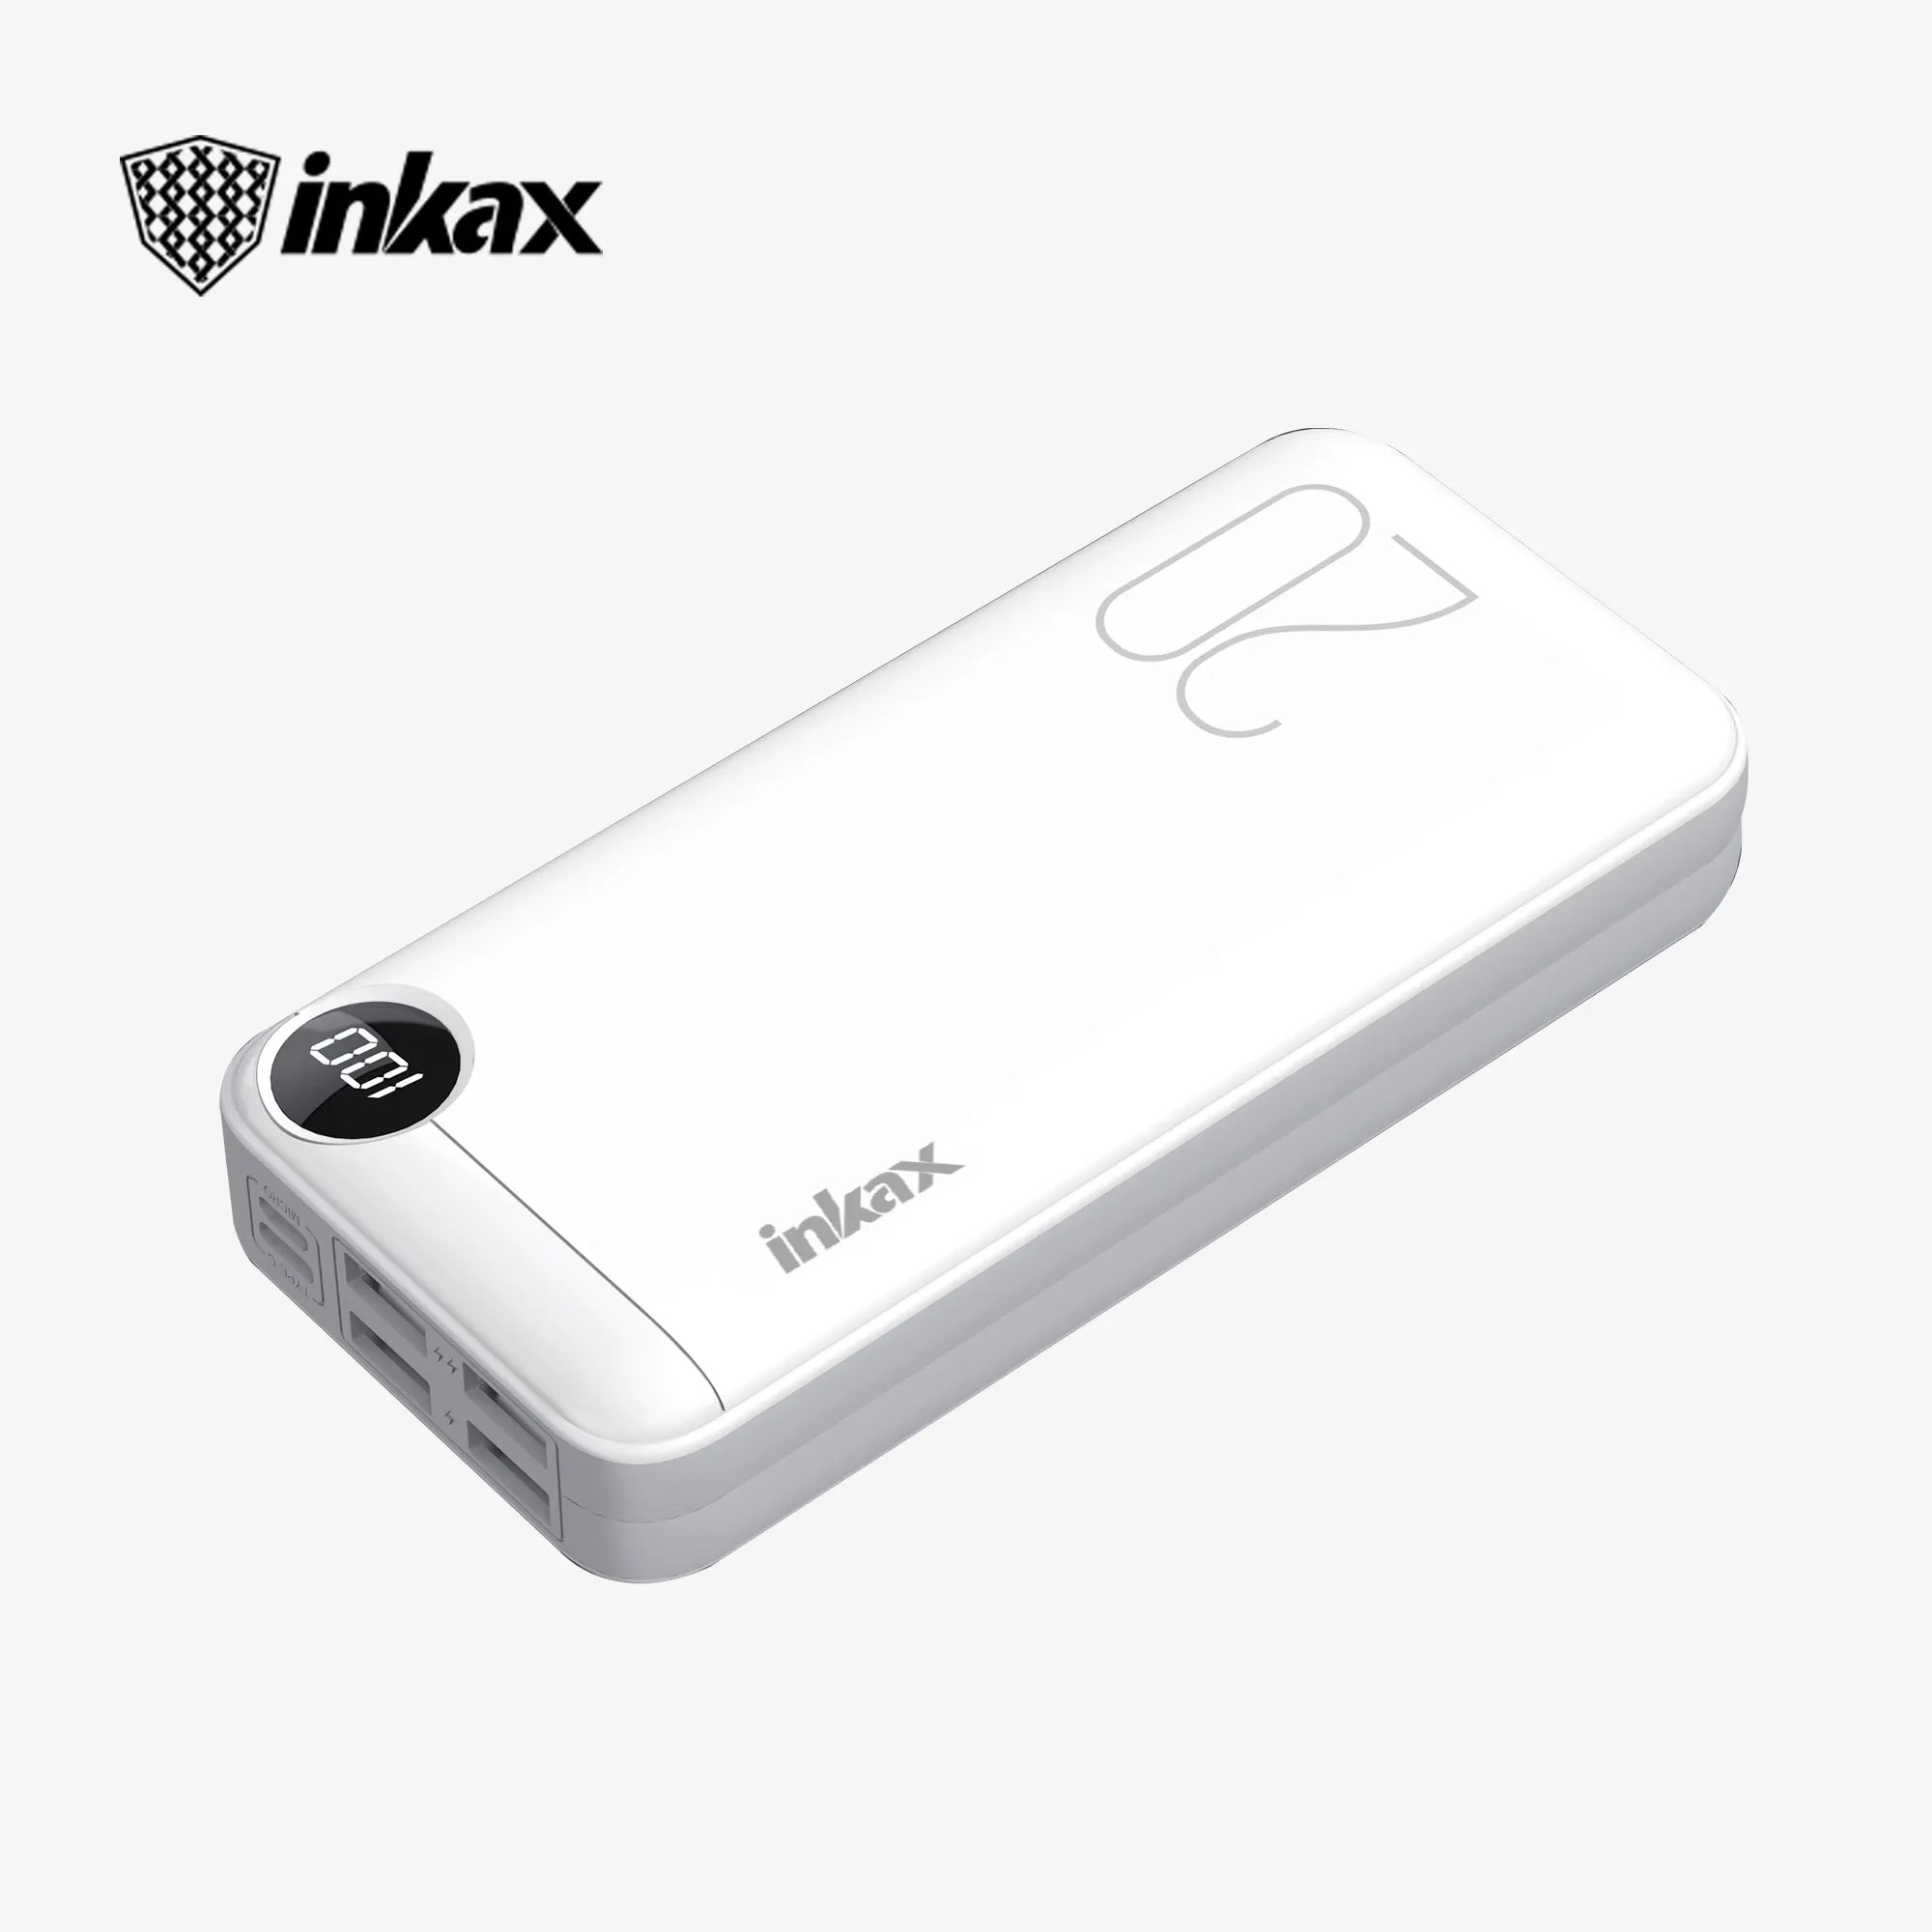 Inkax 20000mAh batterie externe charge super rapide grande capacité charge flash bidirectionnelle alimentation extérieure portable pour téléphone